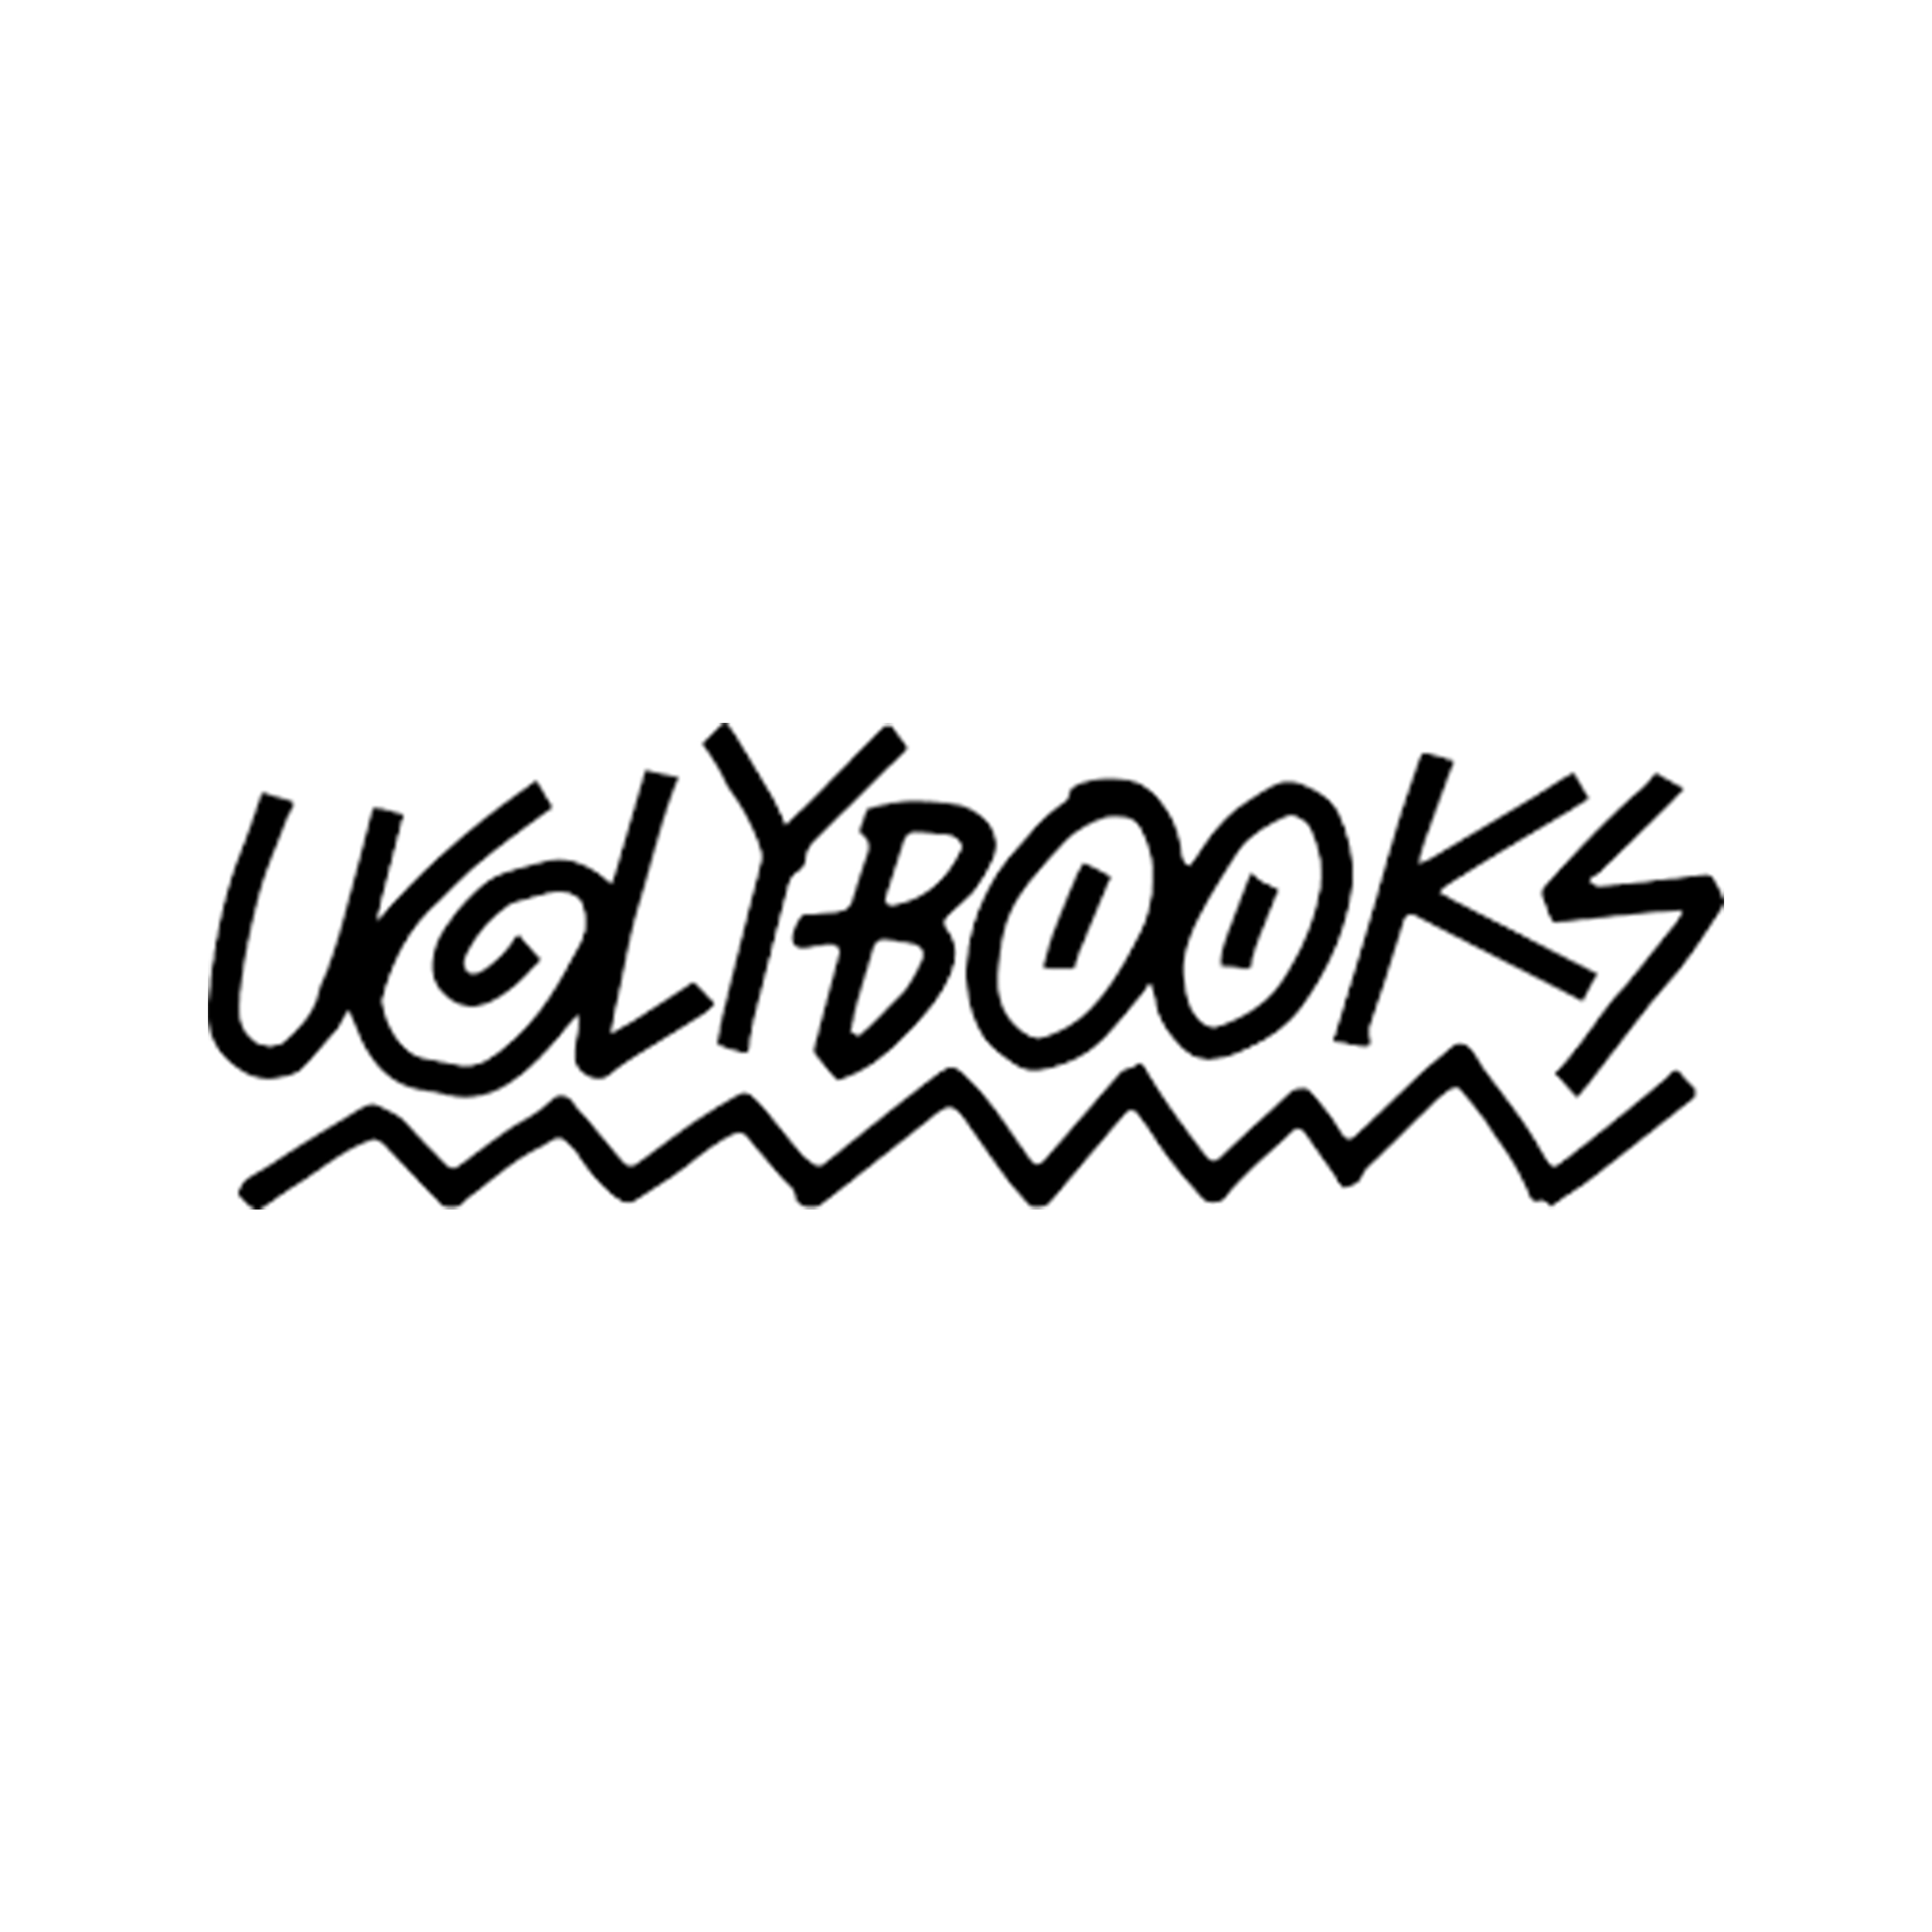 Uglybooks logo